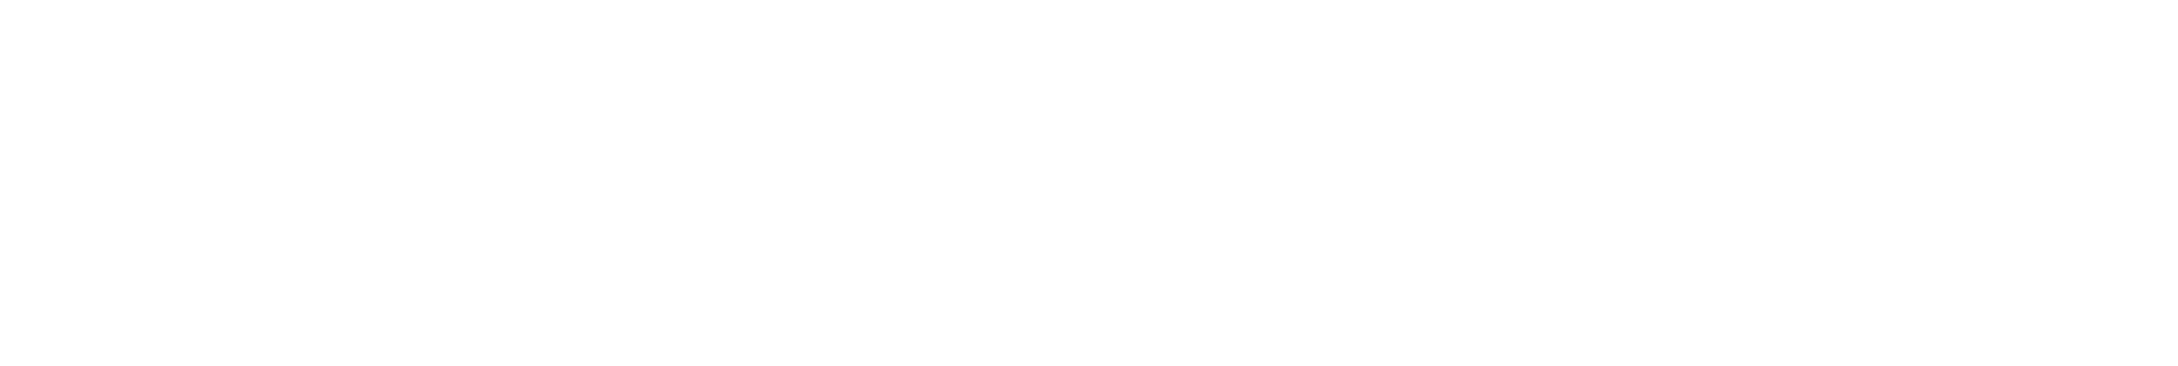 alpha beta asset management